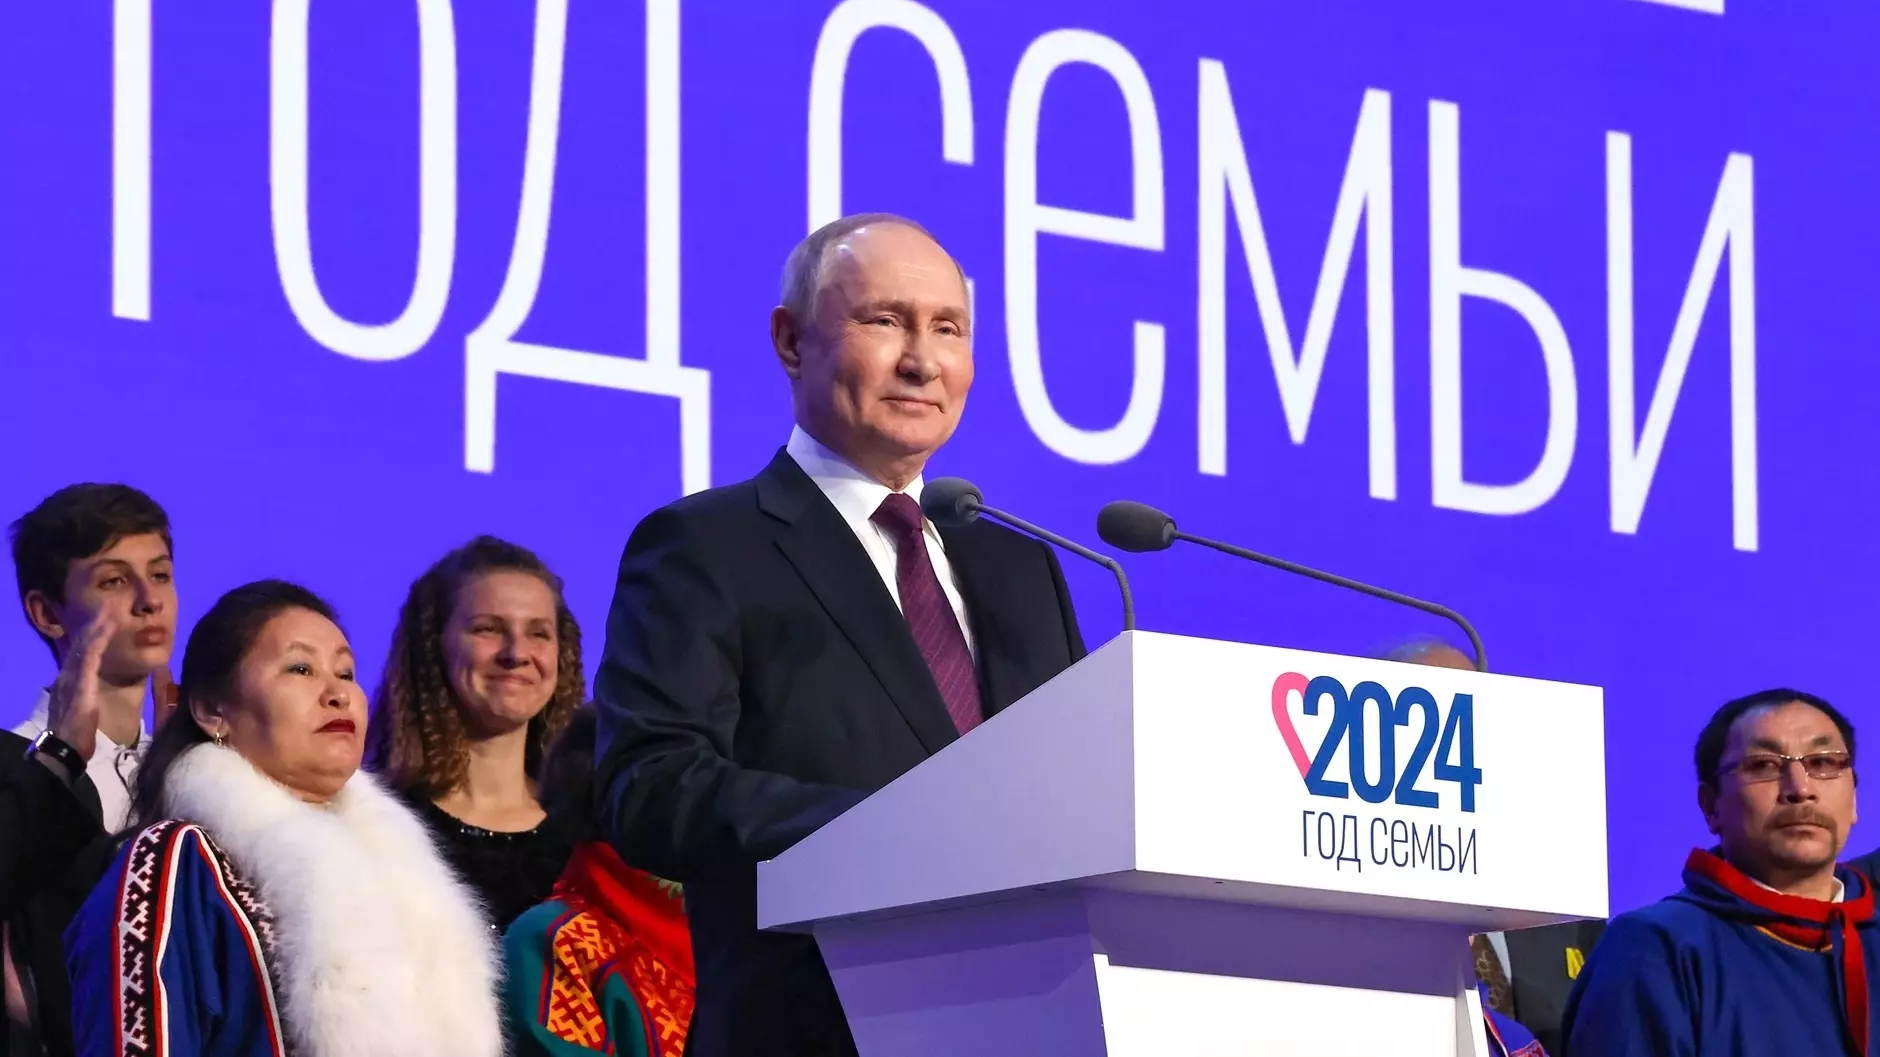 Владимир Путин дал старт Году семьи и объявил о продлении льготной ипотеки